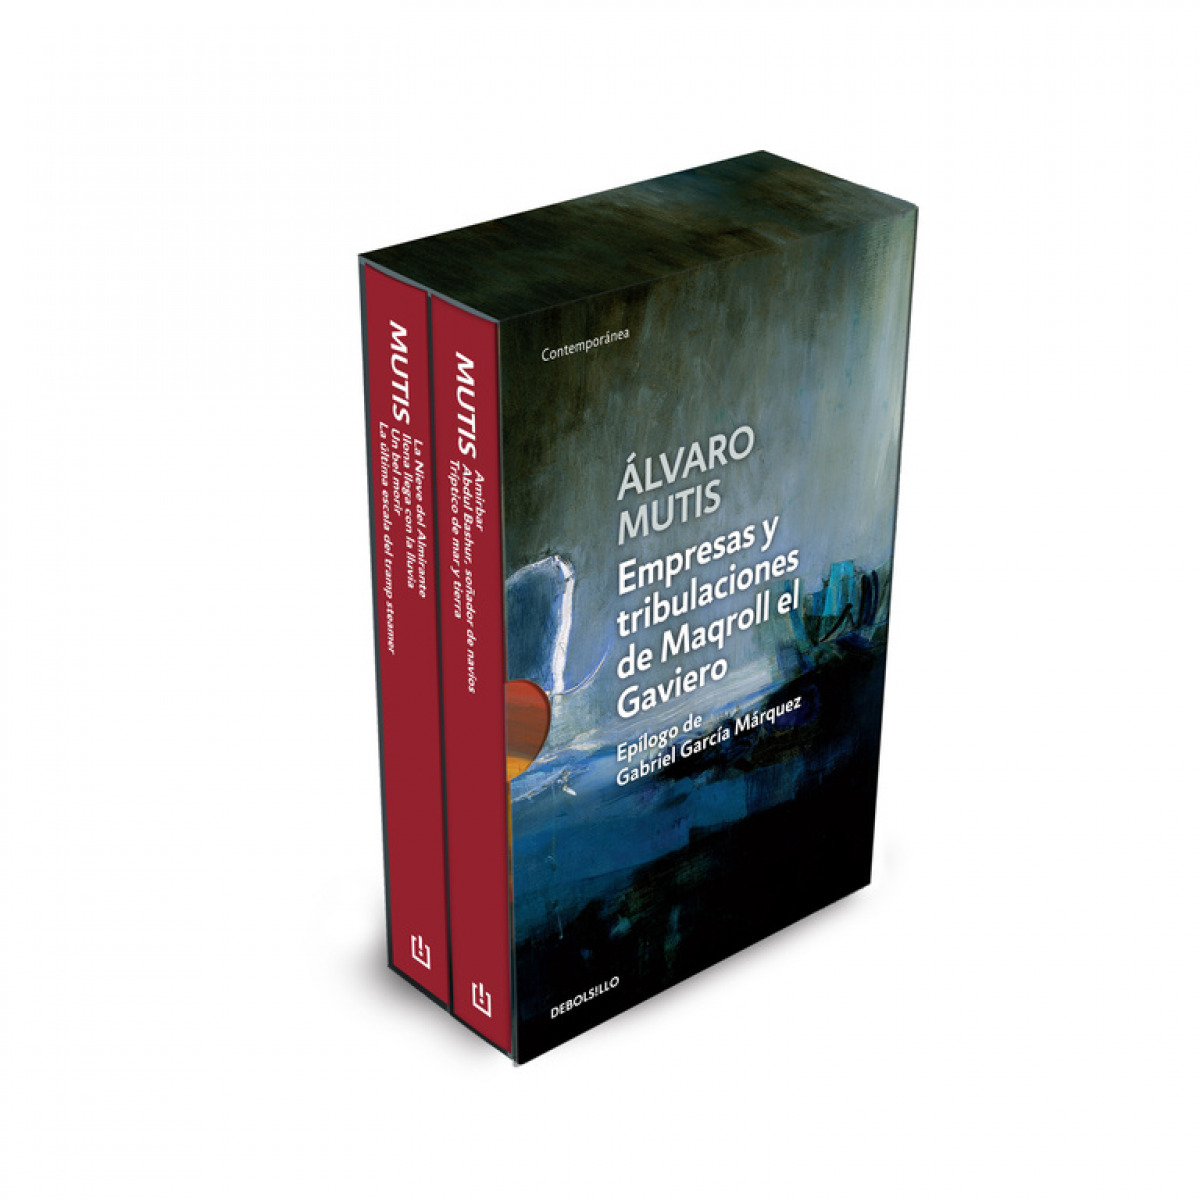 Empresas y tributaciones de magroll el gaviero.(2 tomos) - Mutis, Alvaro